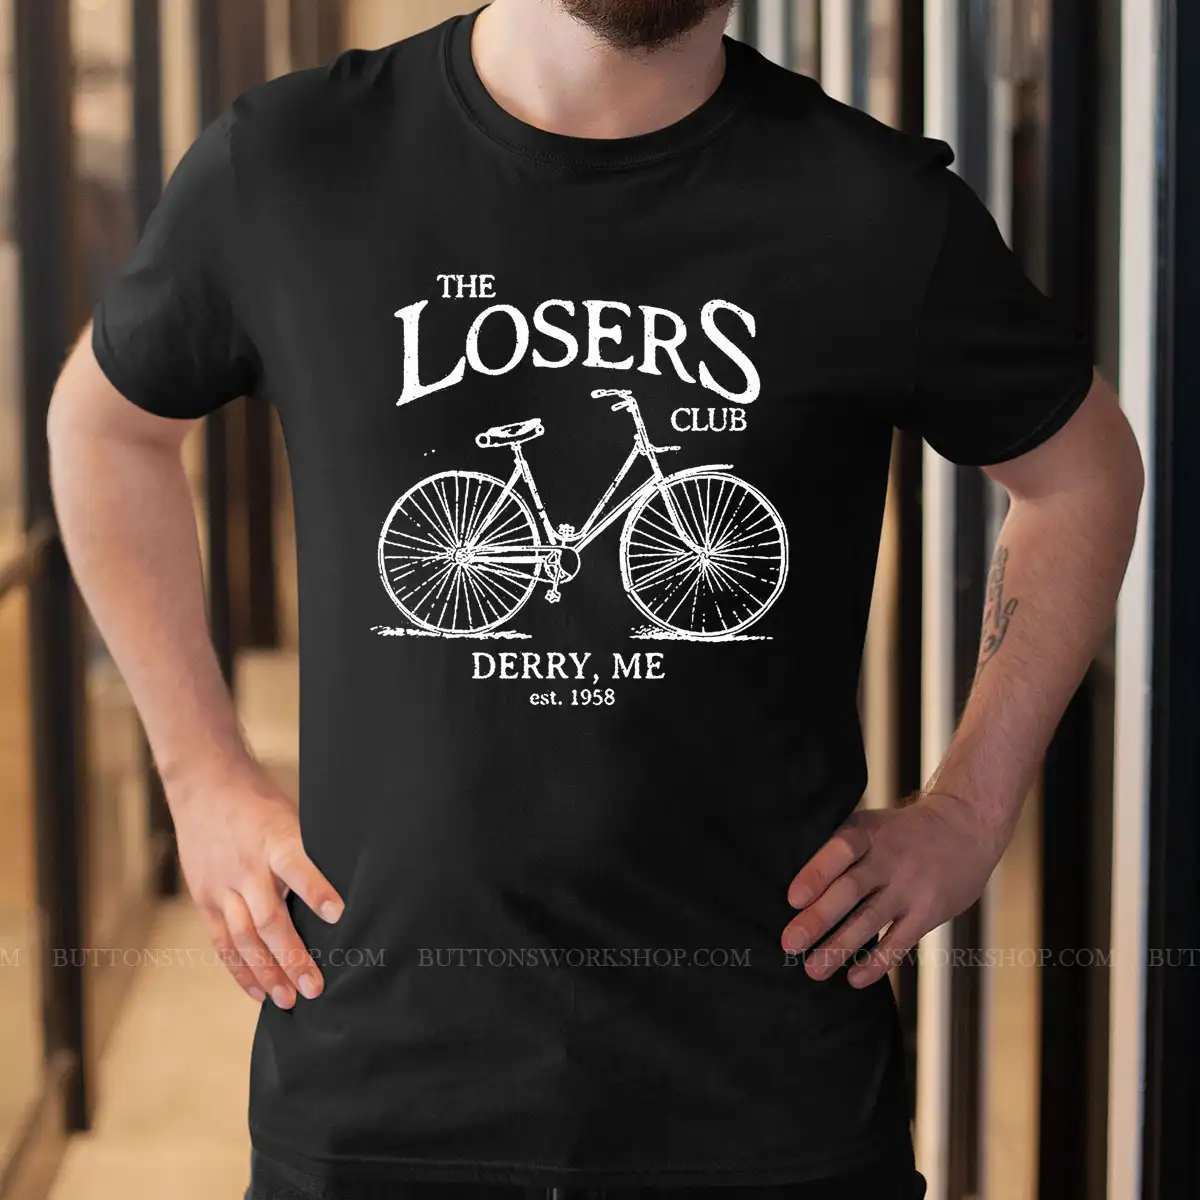 The Losers Club Shirt Unisex Tshirt